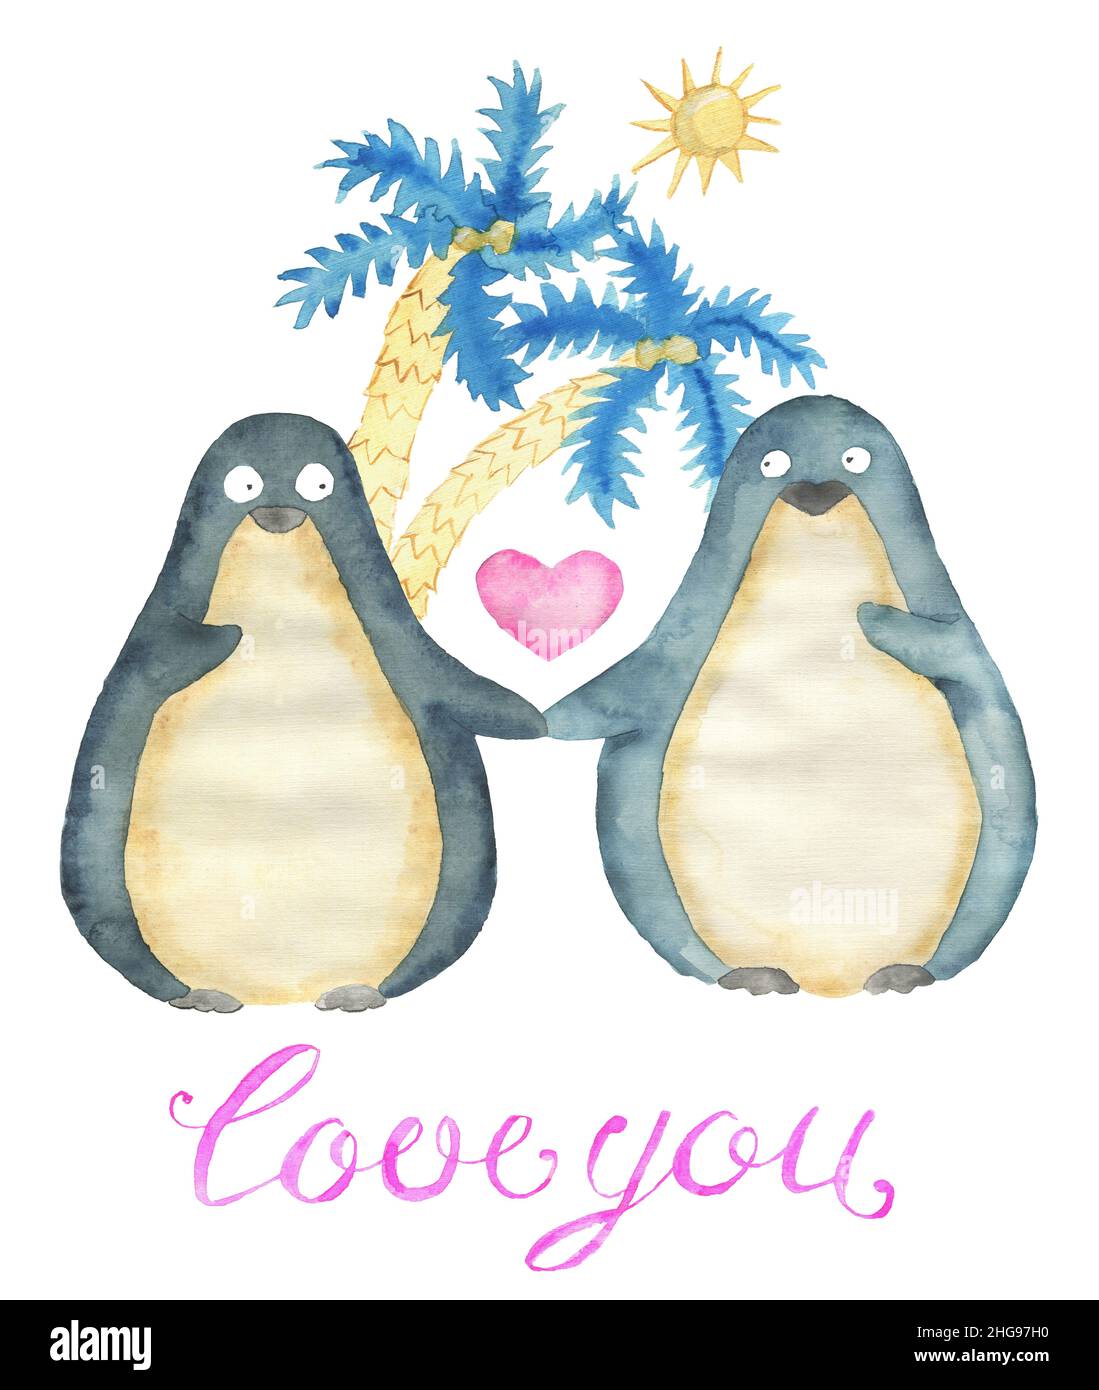 Carte de voeux avec adorable oiseau de pingouin kawaii avec coeur, texte et symboles d'amour isolés sur fond blanc, concept pour la Saint-Valentin Hol Banque D'Images